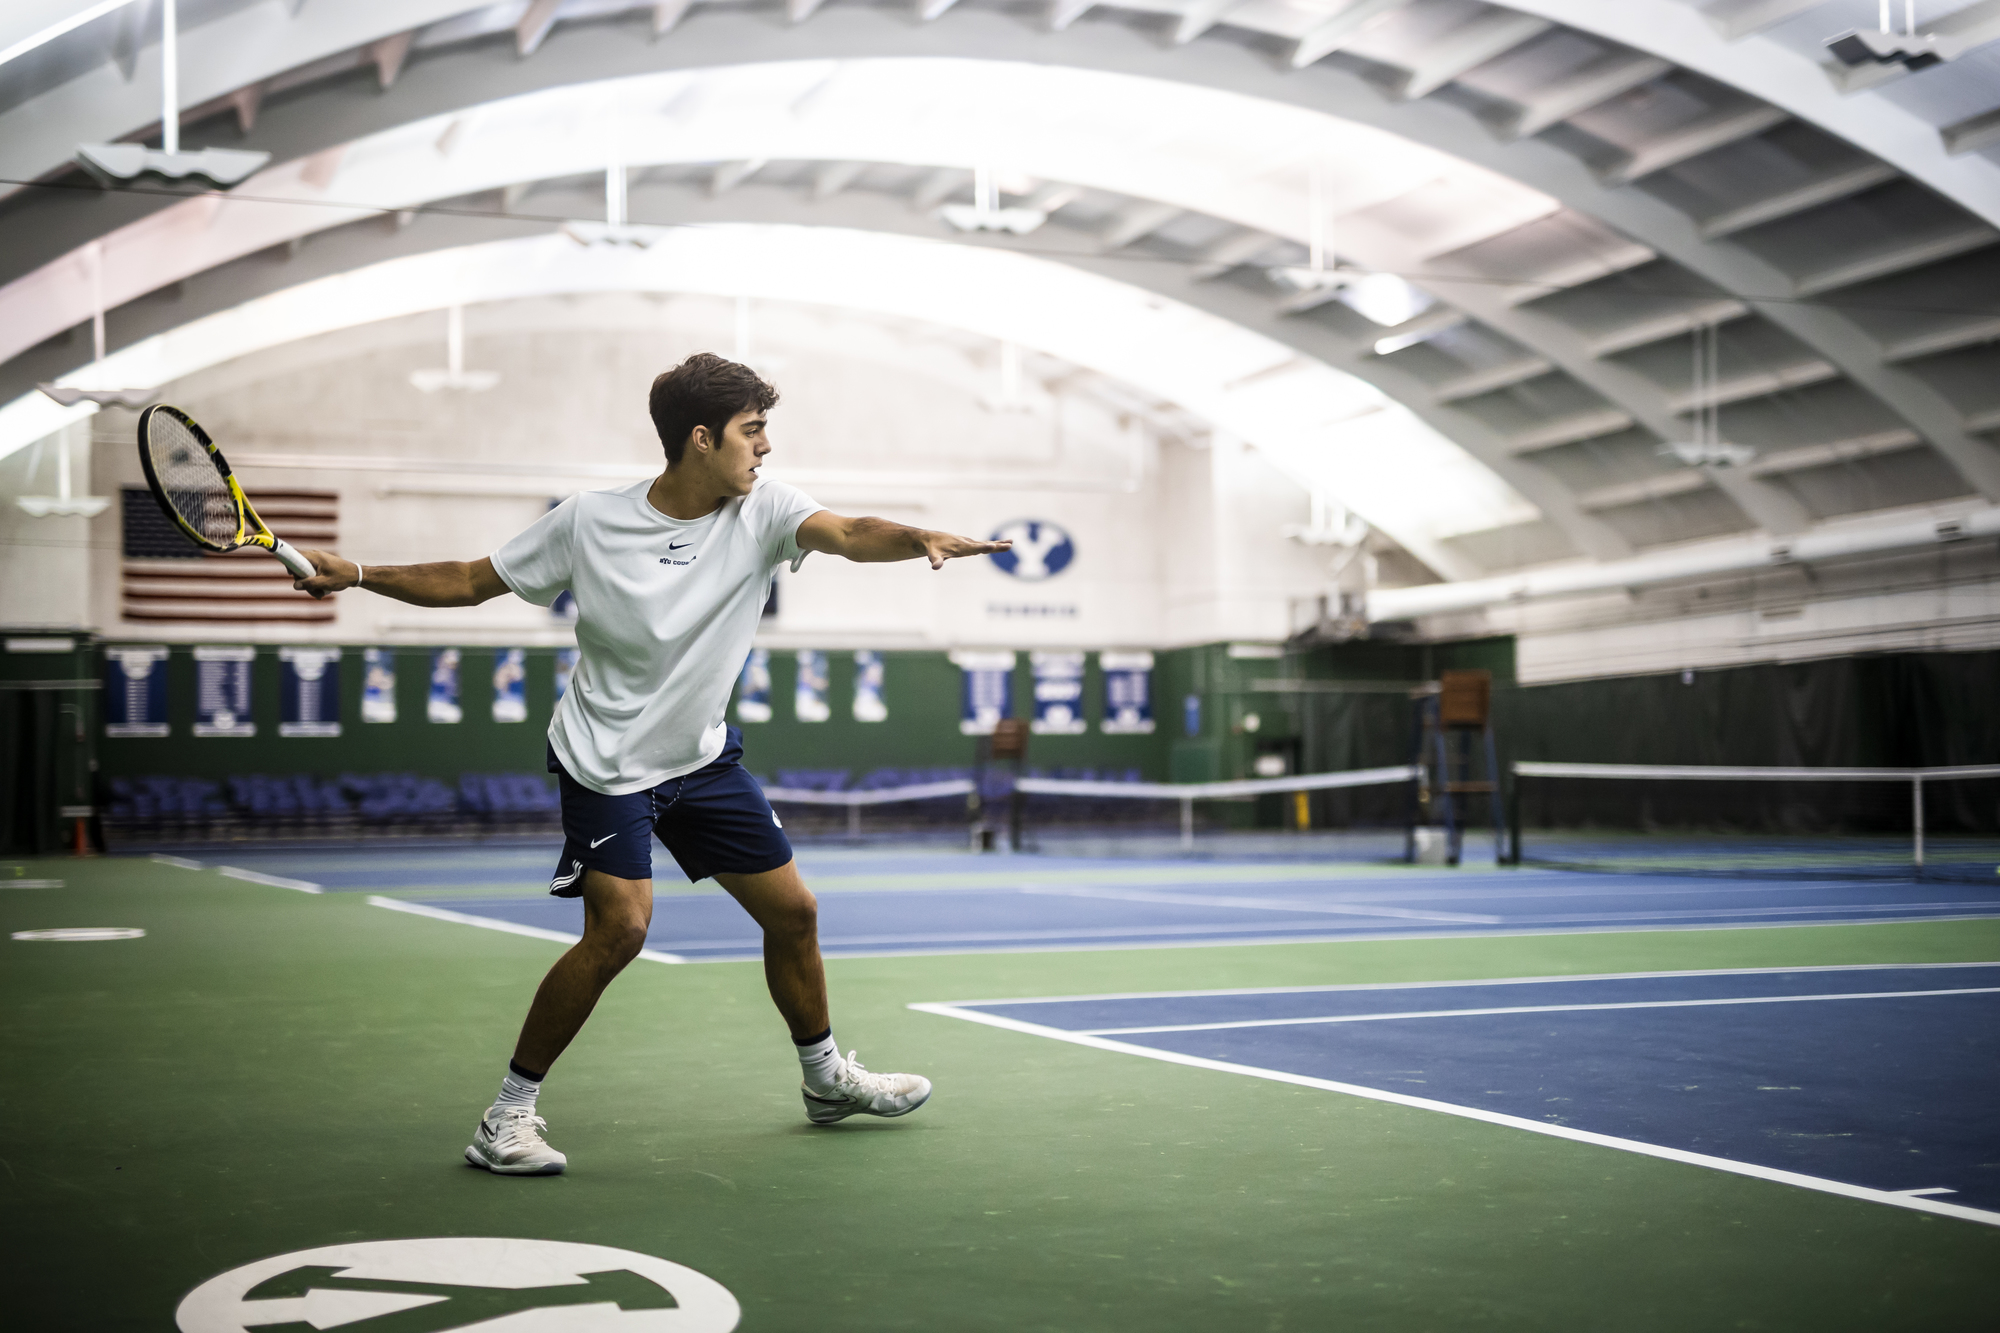 Matheus F. teaches tennis lessons in Orem, UT